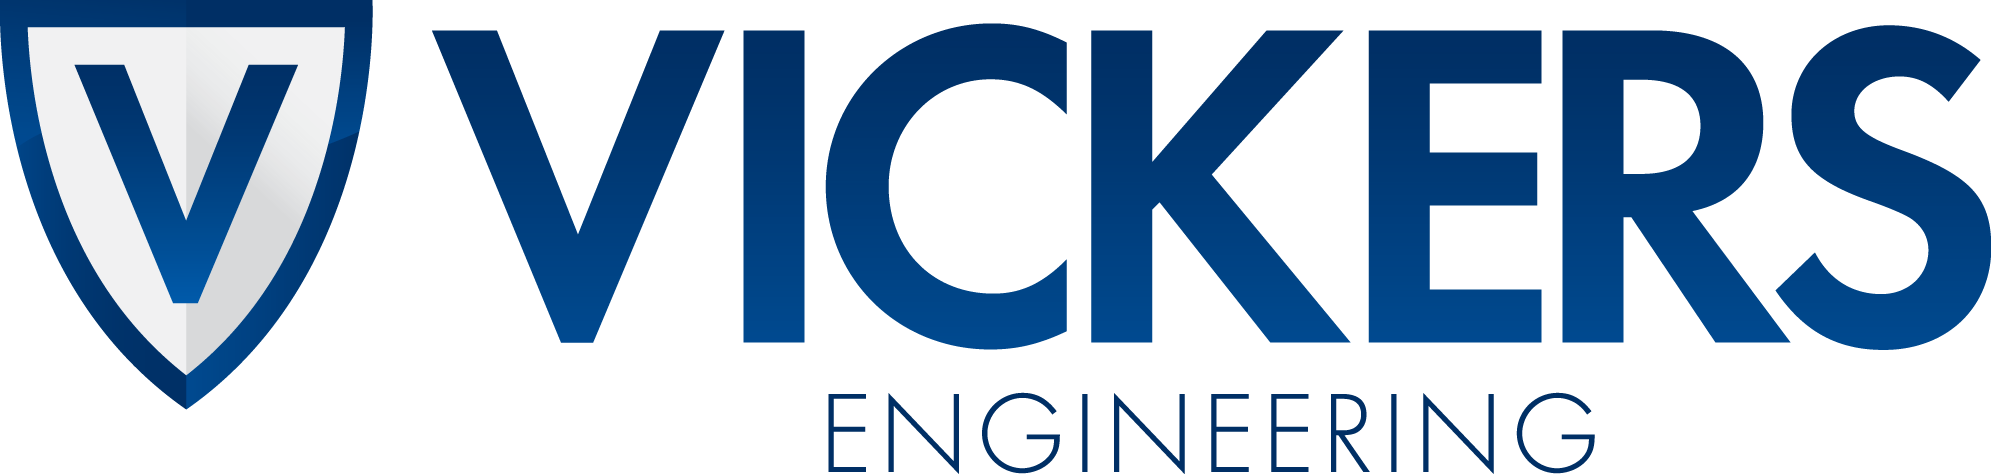 Vickers Engineering